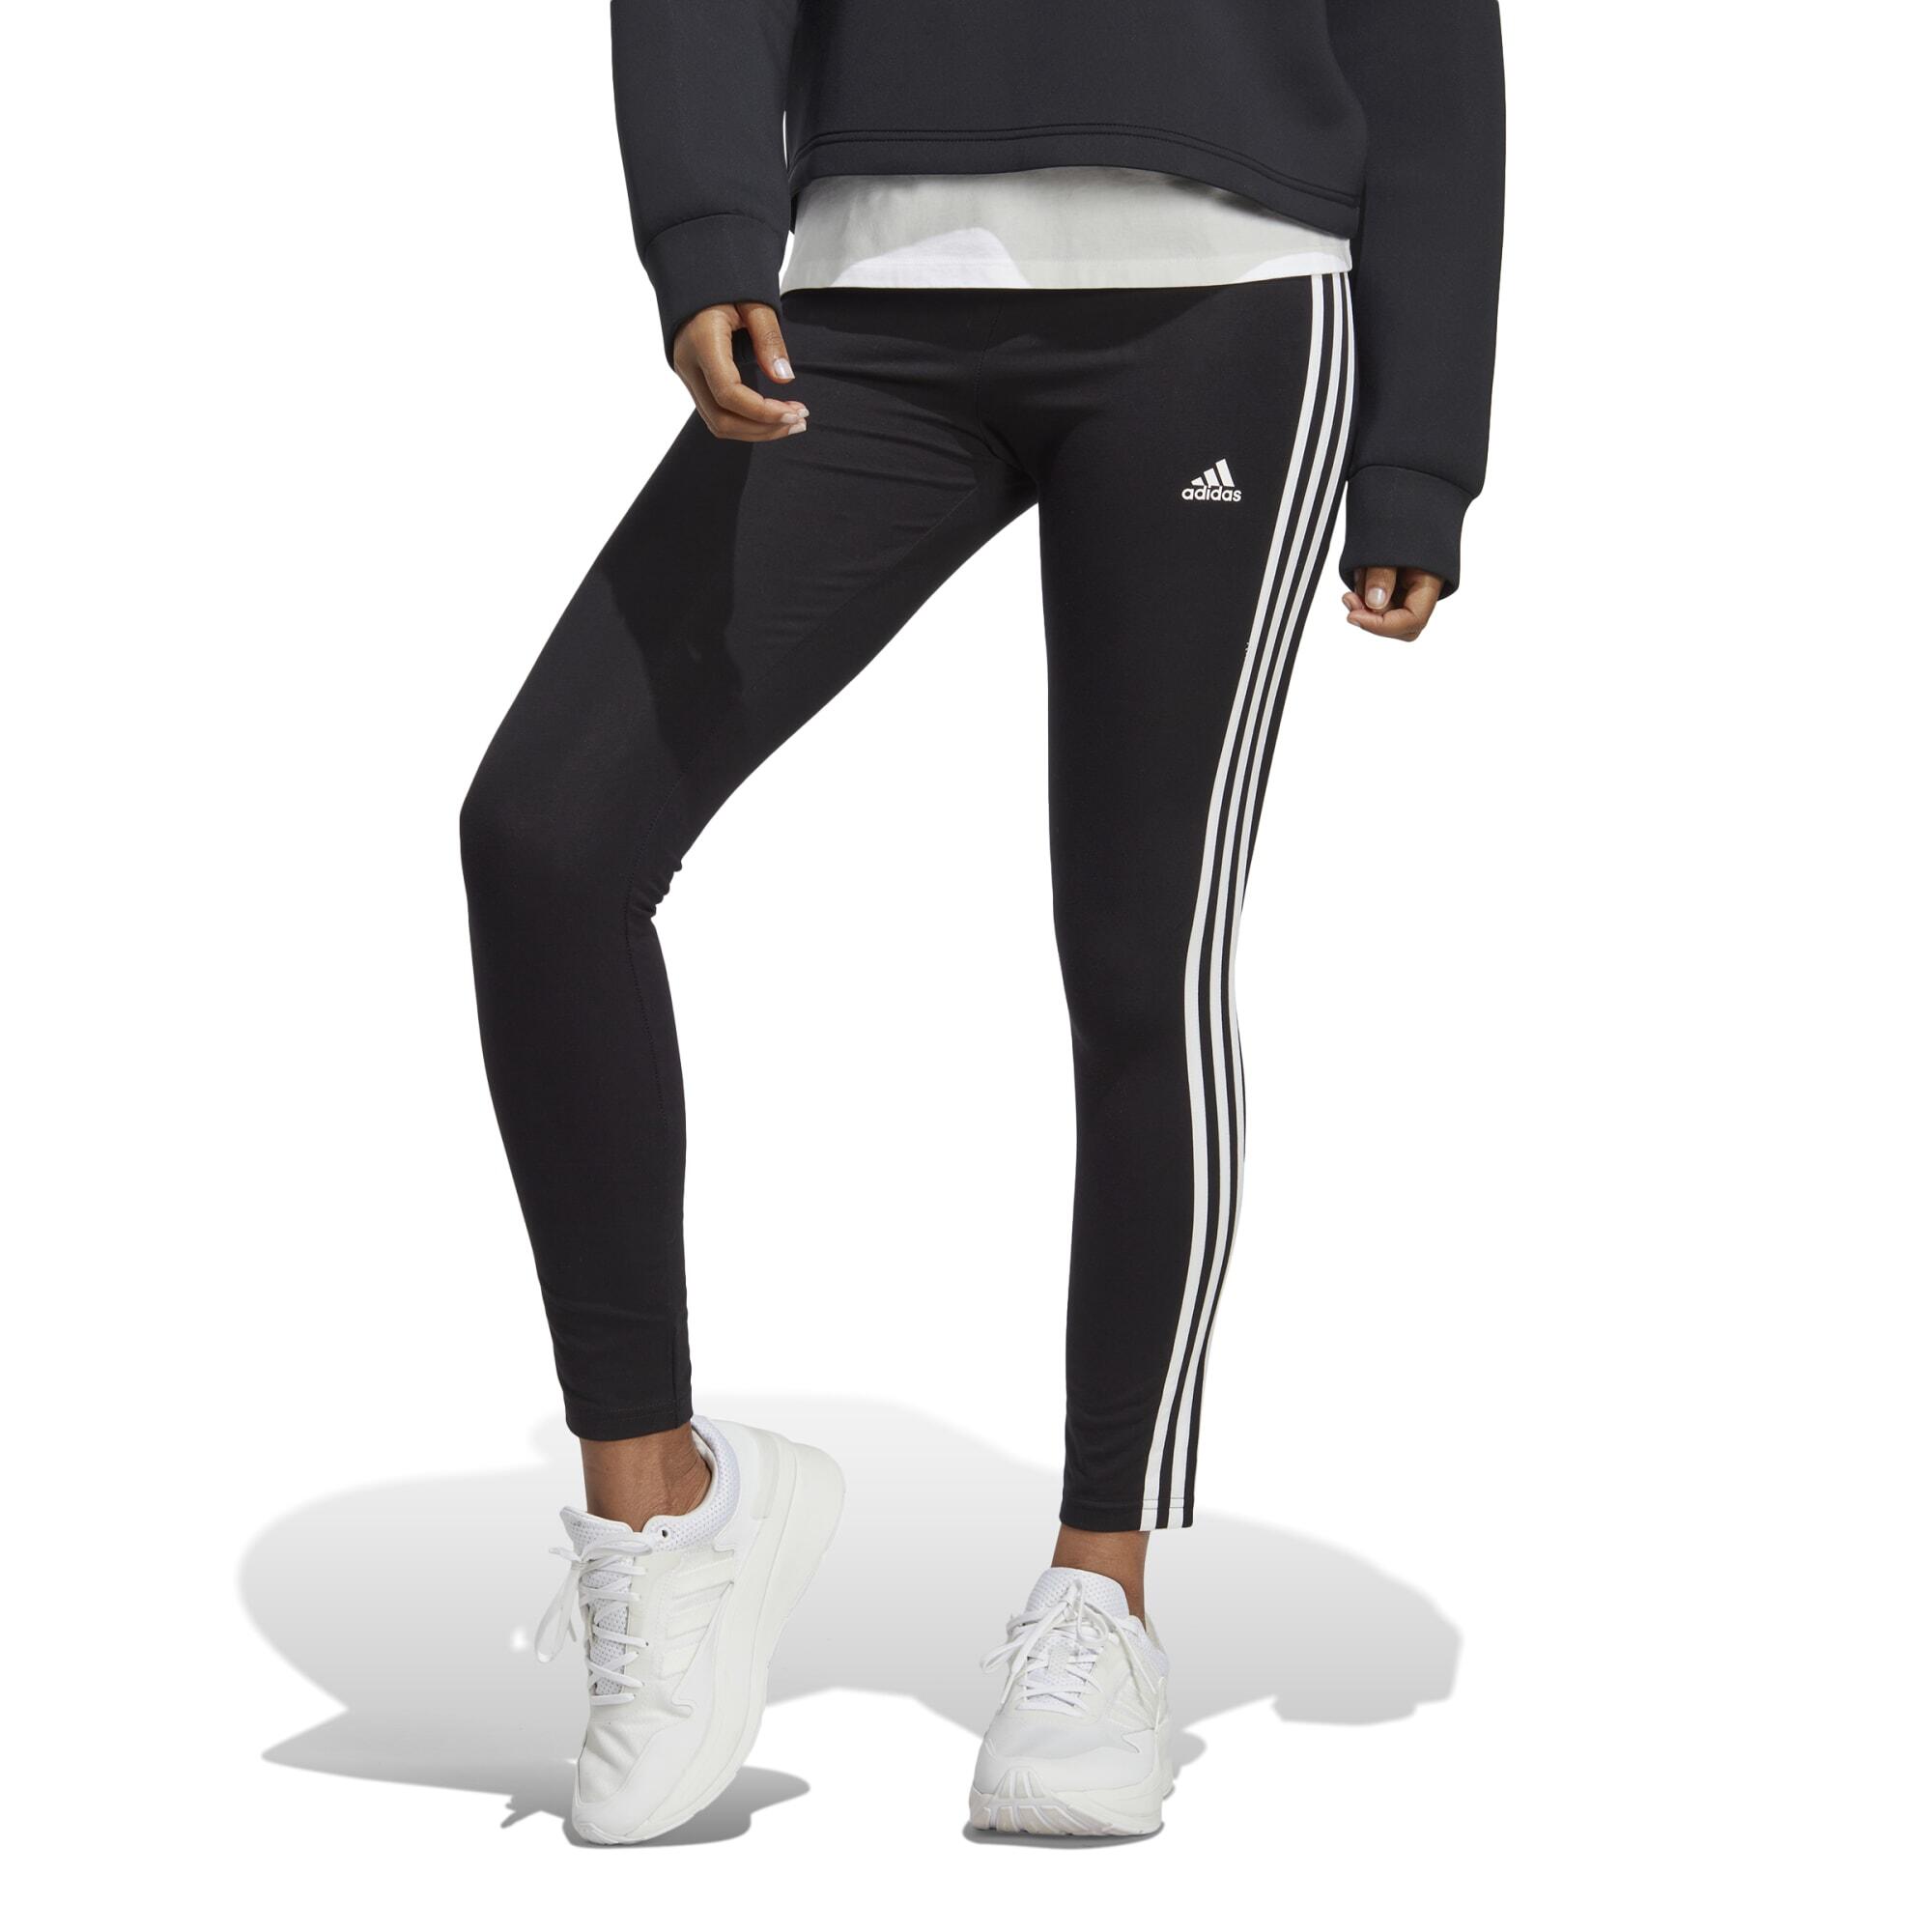 ADIDAS Legging De Fitness Adidas Femme Taille Haute 3s Noir Et Blanc -